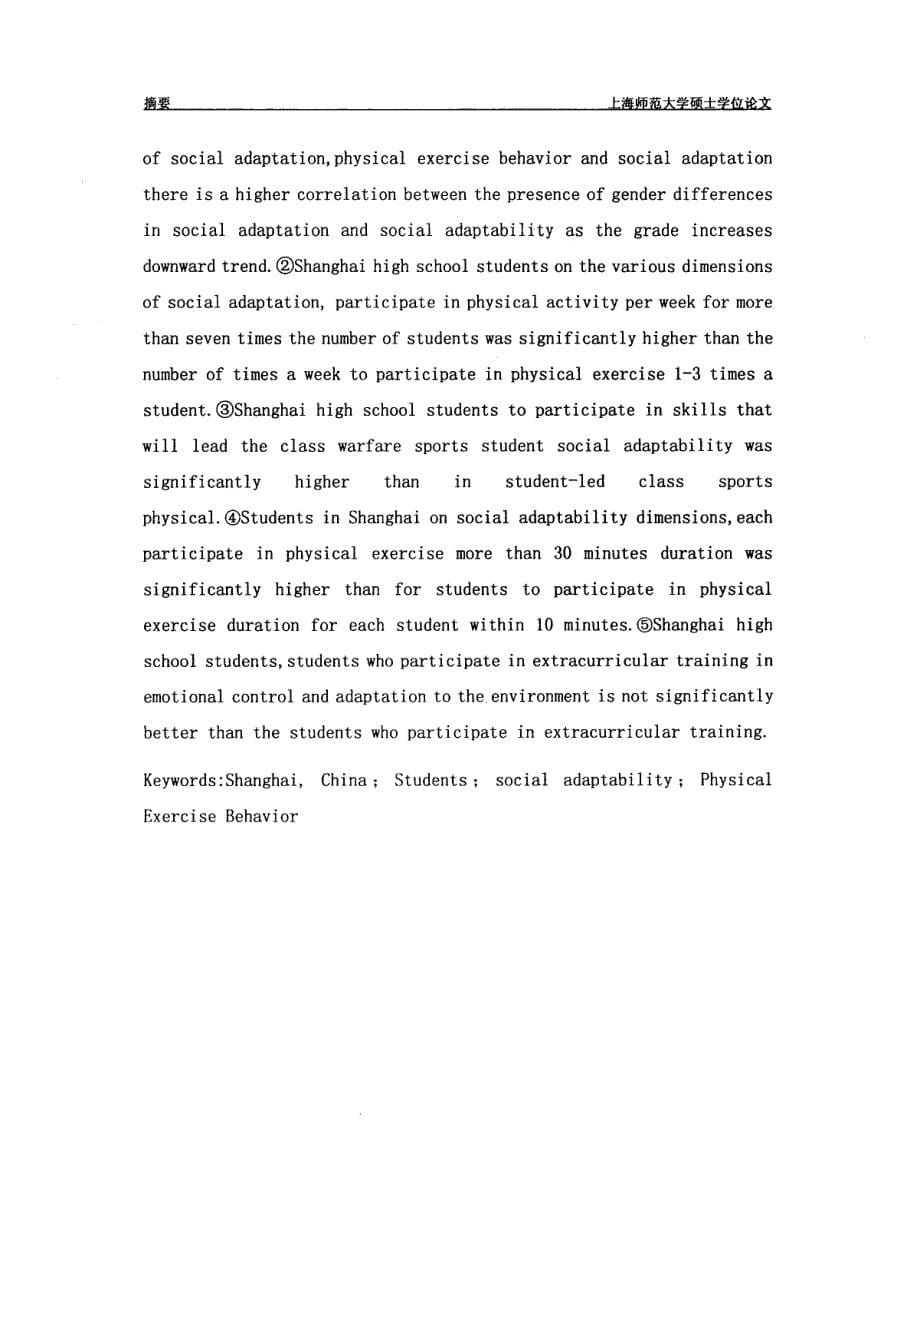 上海市中学生社会适应能力与体育锻炼行为关系研究_第5页